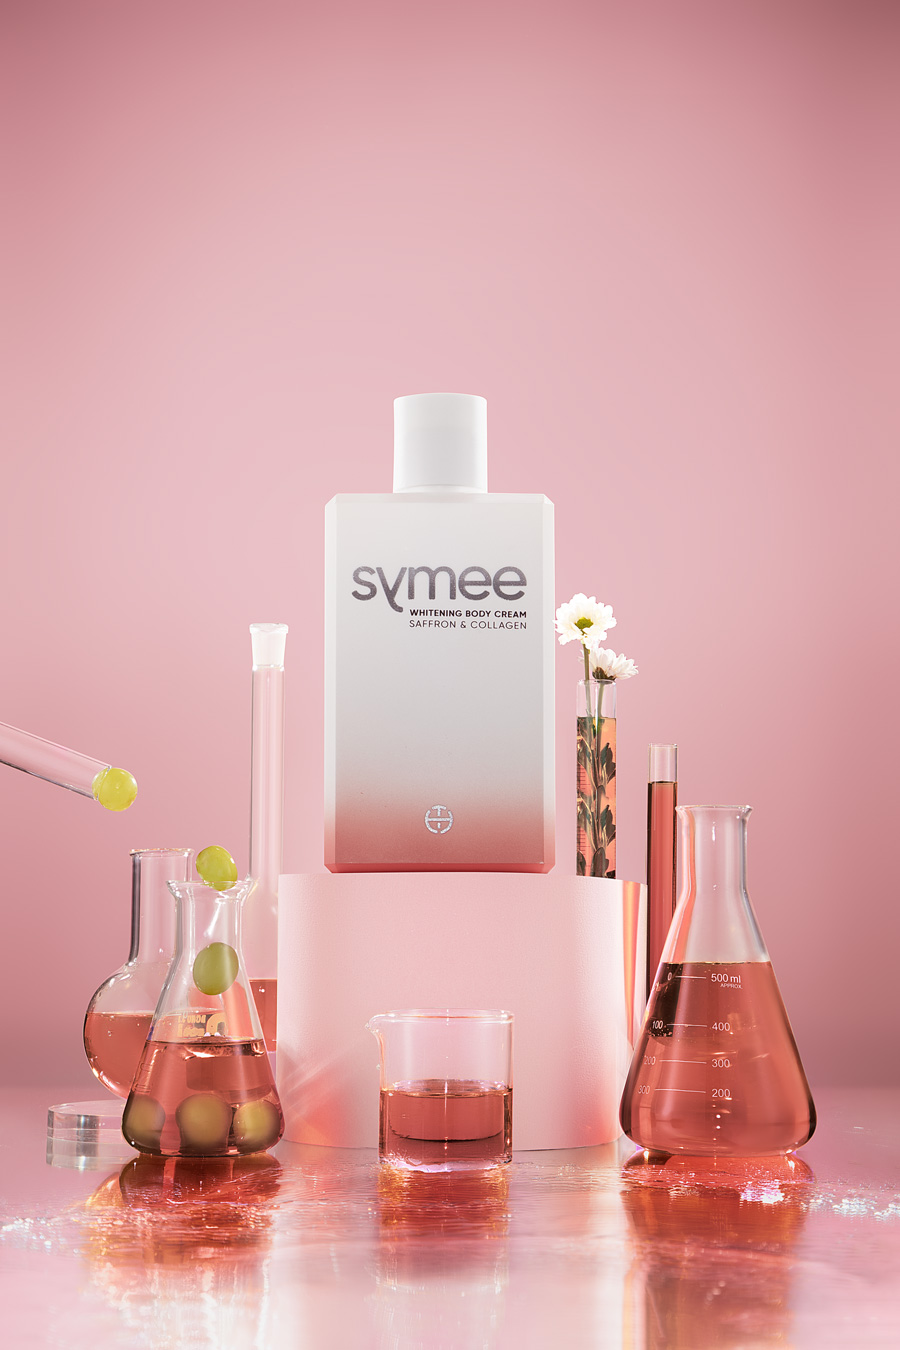 Các dòng sản phẩm của thương hiệu Symee được đông đảo người dùng yêu thích bởi chất lượng hiệu quả